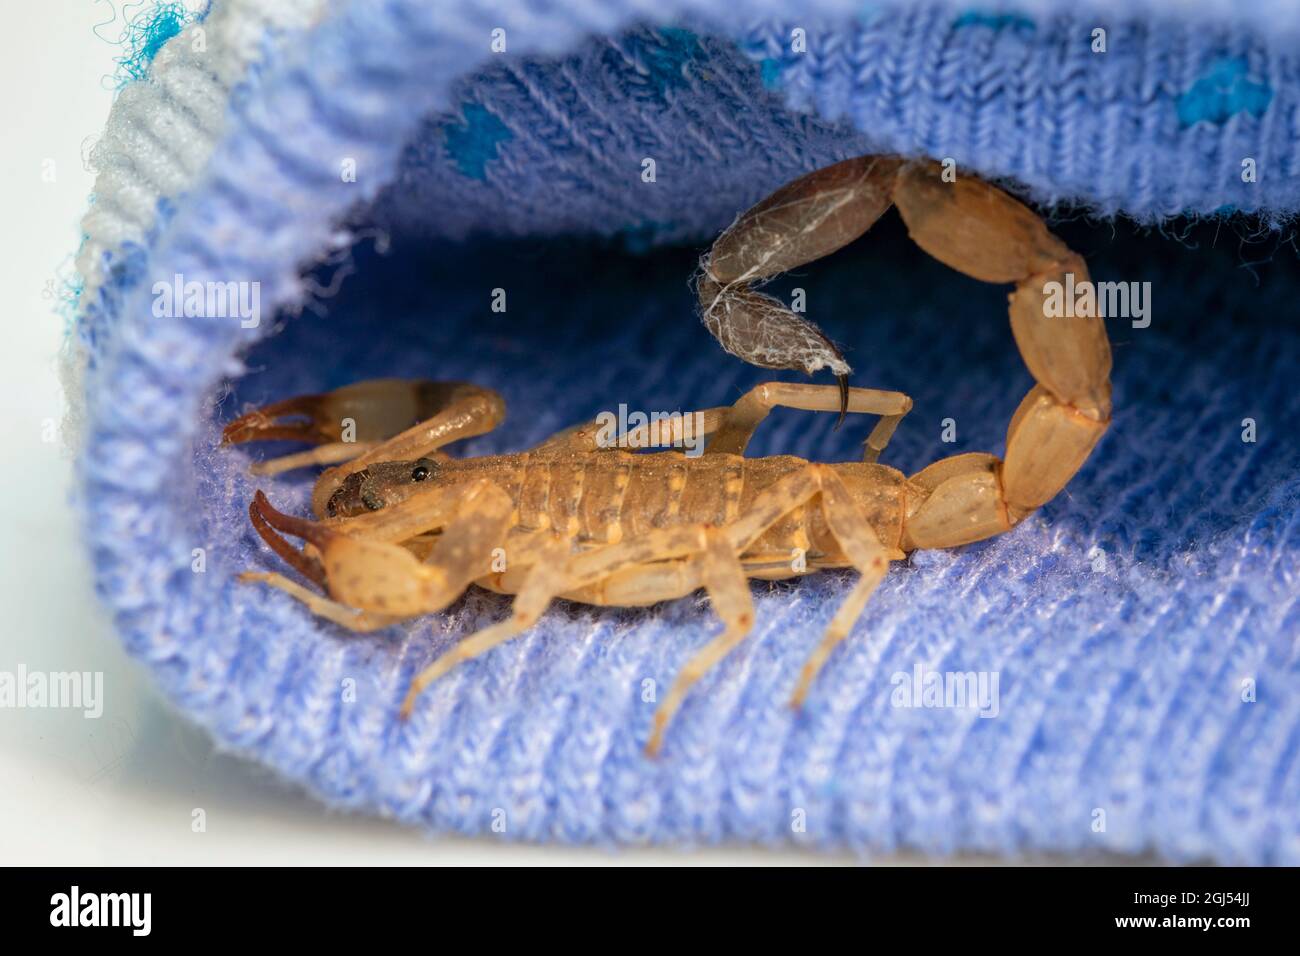 Bild von braunem Skorpion in blauem Tuch. Insekt. Tier. Stockfoto